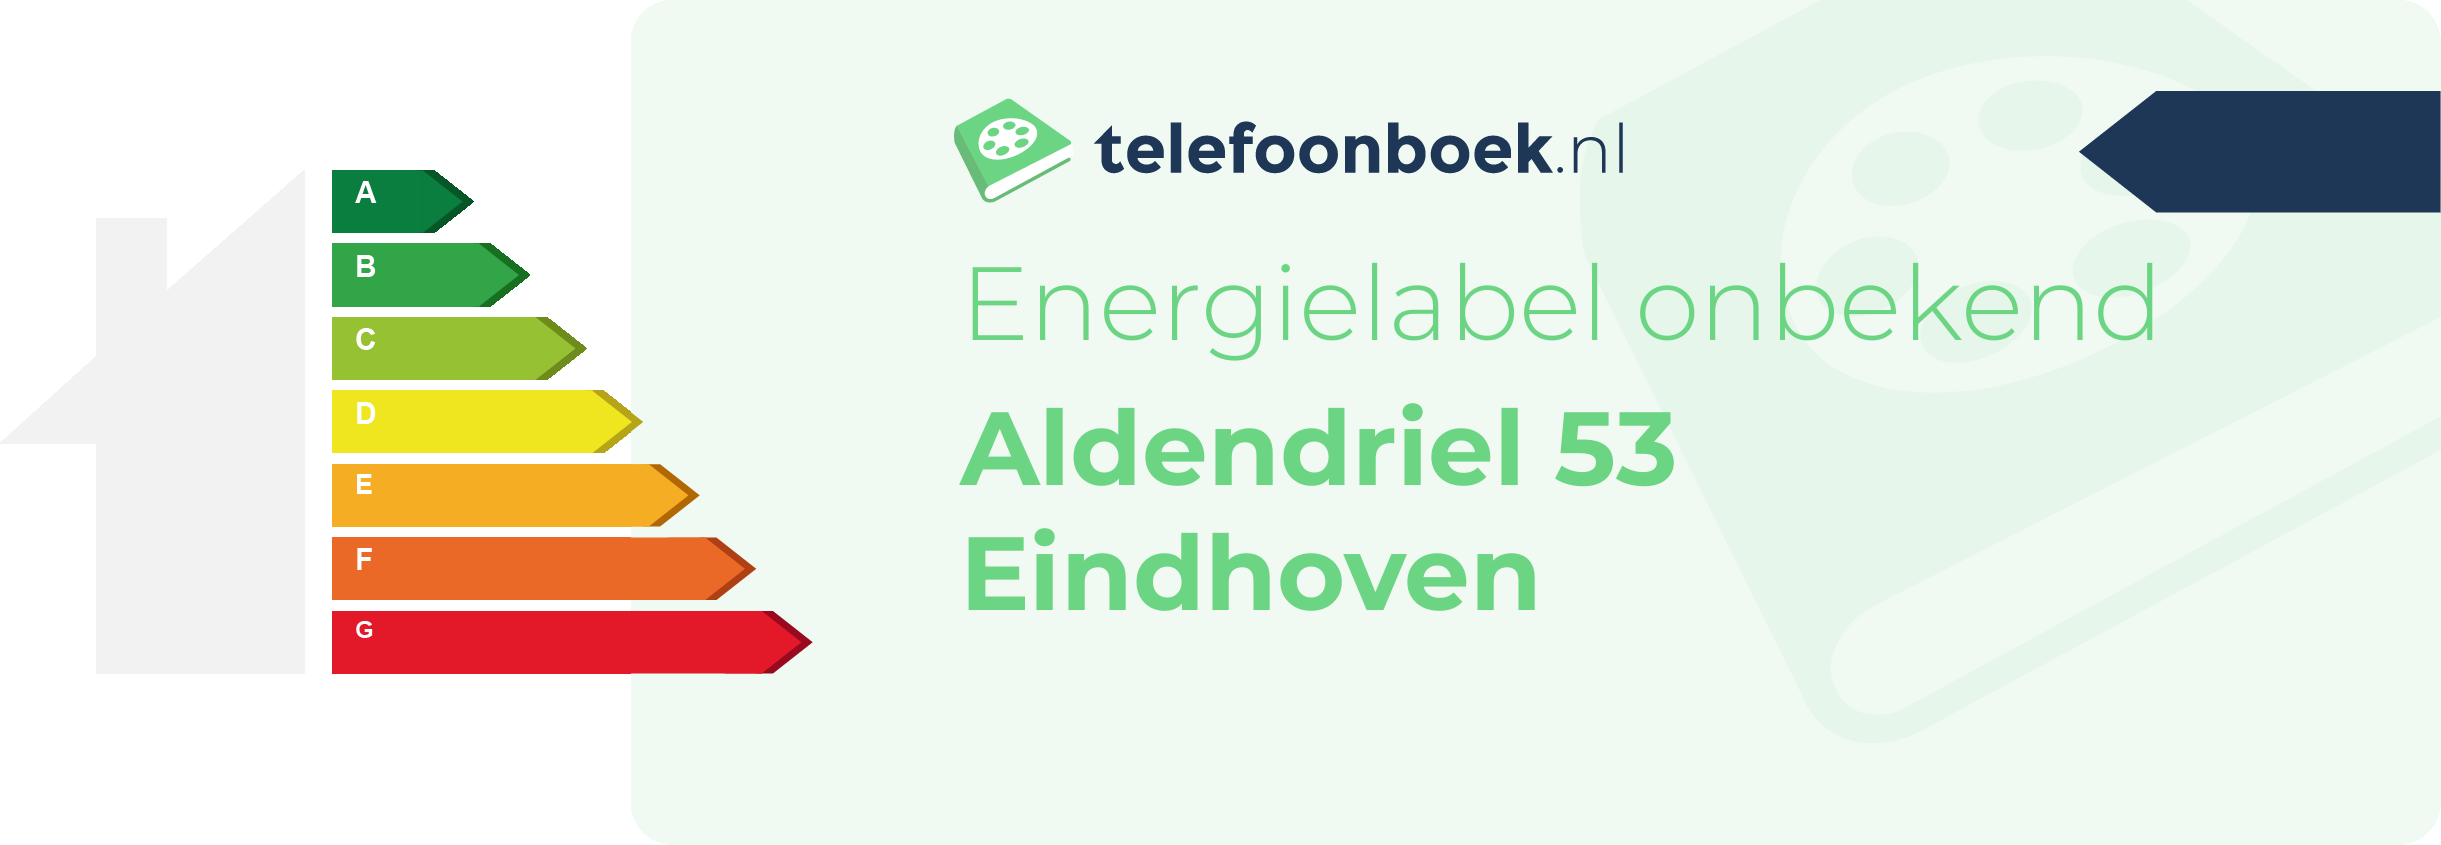 Energielabel Aldendriel 53 Eindhoven